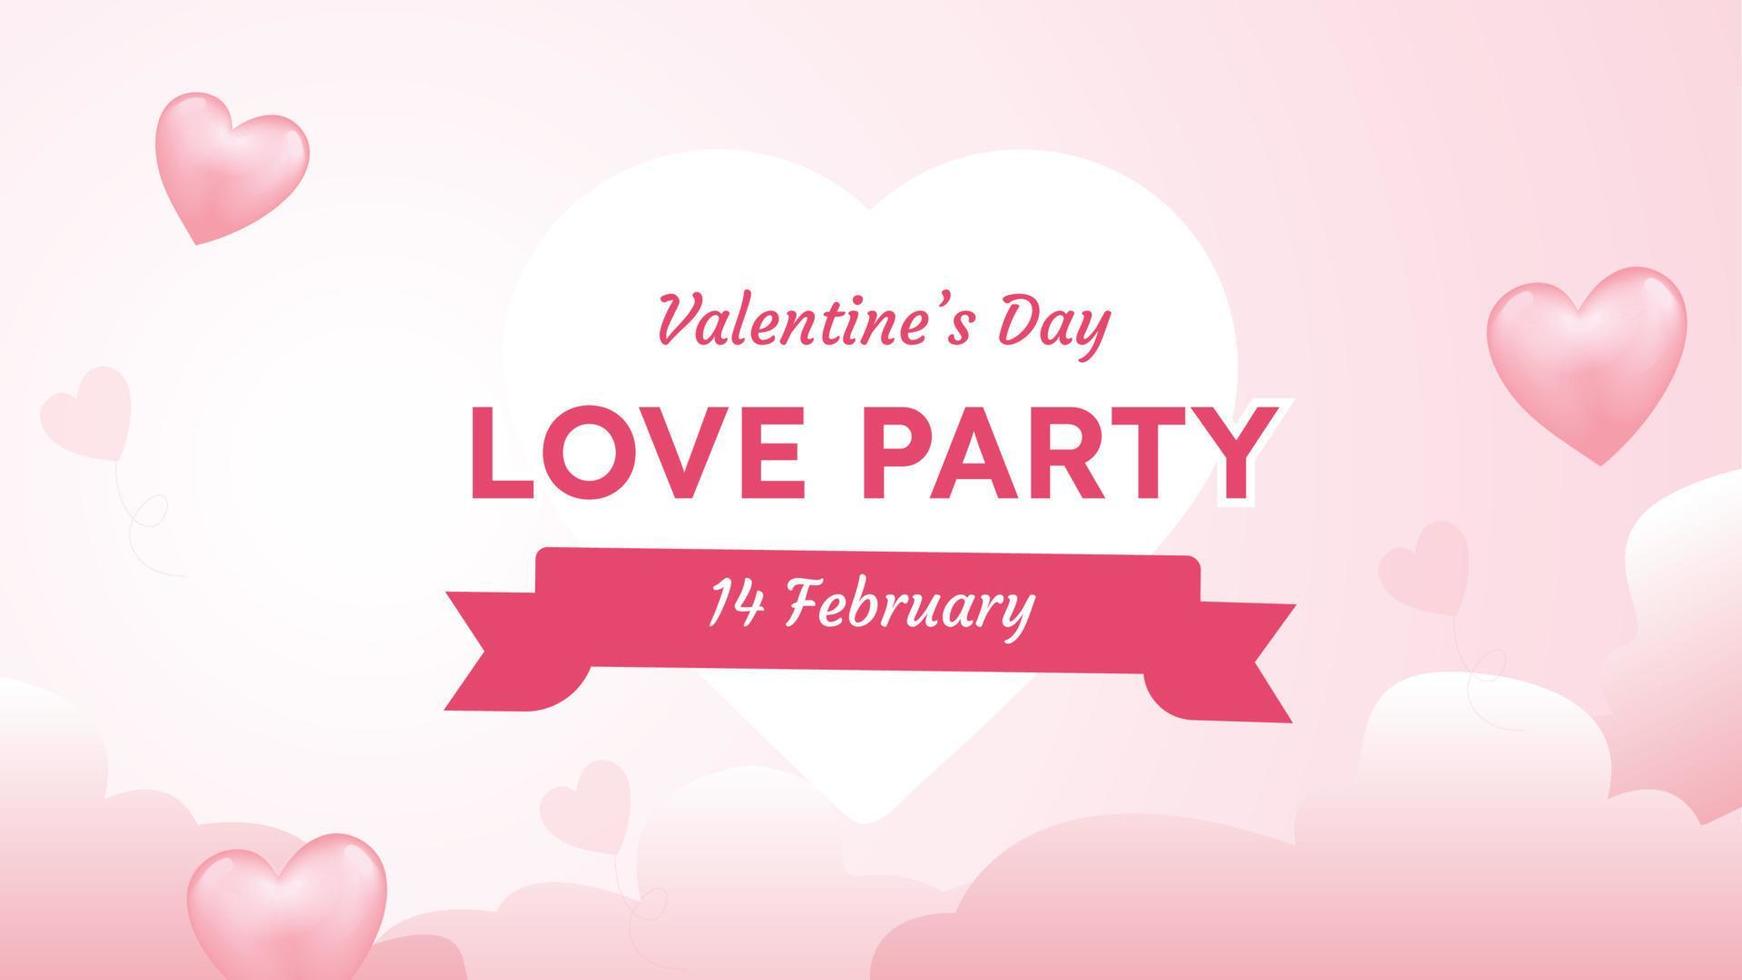 tarjeta de felicitación de fondo del día de san valentín para fiesta de amor con papel tapiz dulce de nube de corazón rosa simbólico de hermoso día romántico y tipografía vector